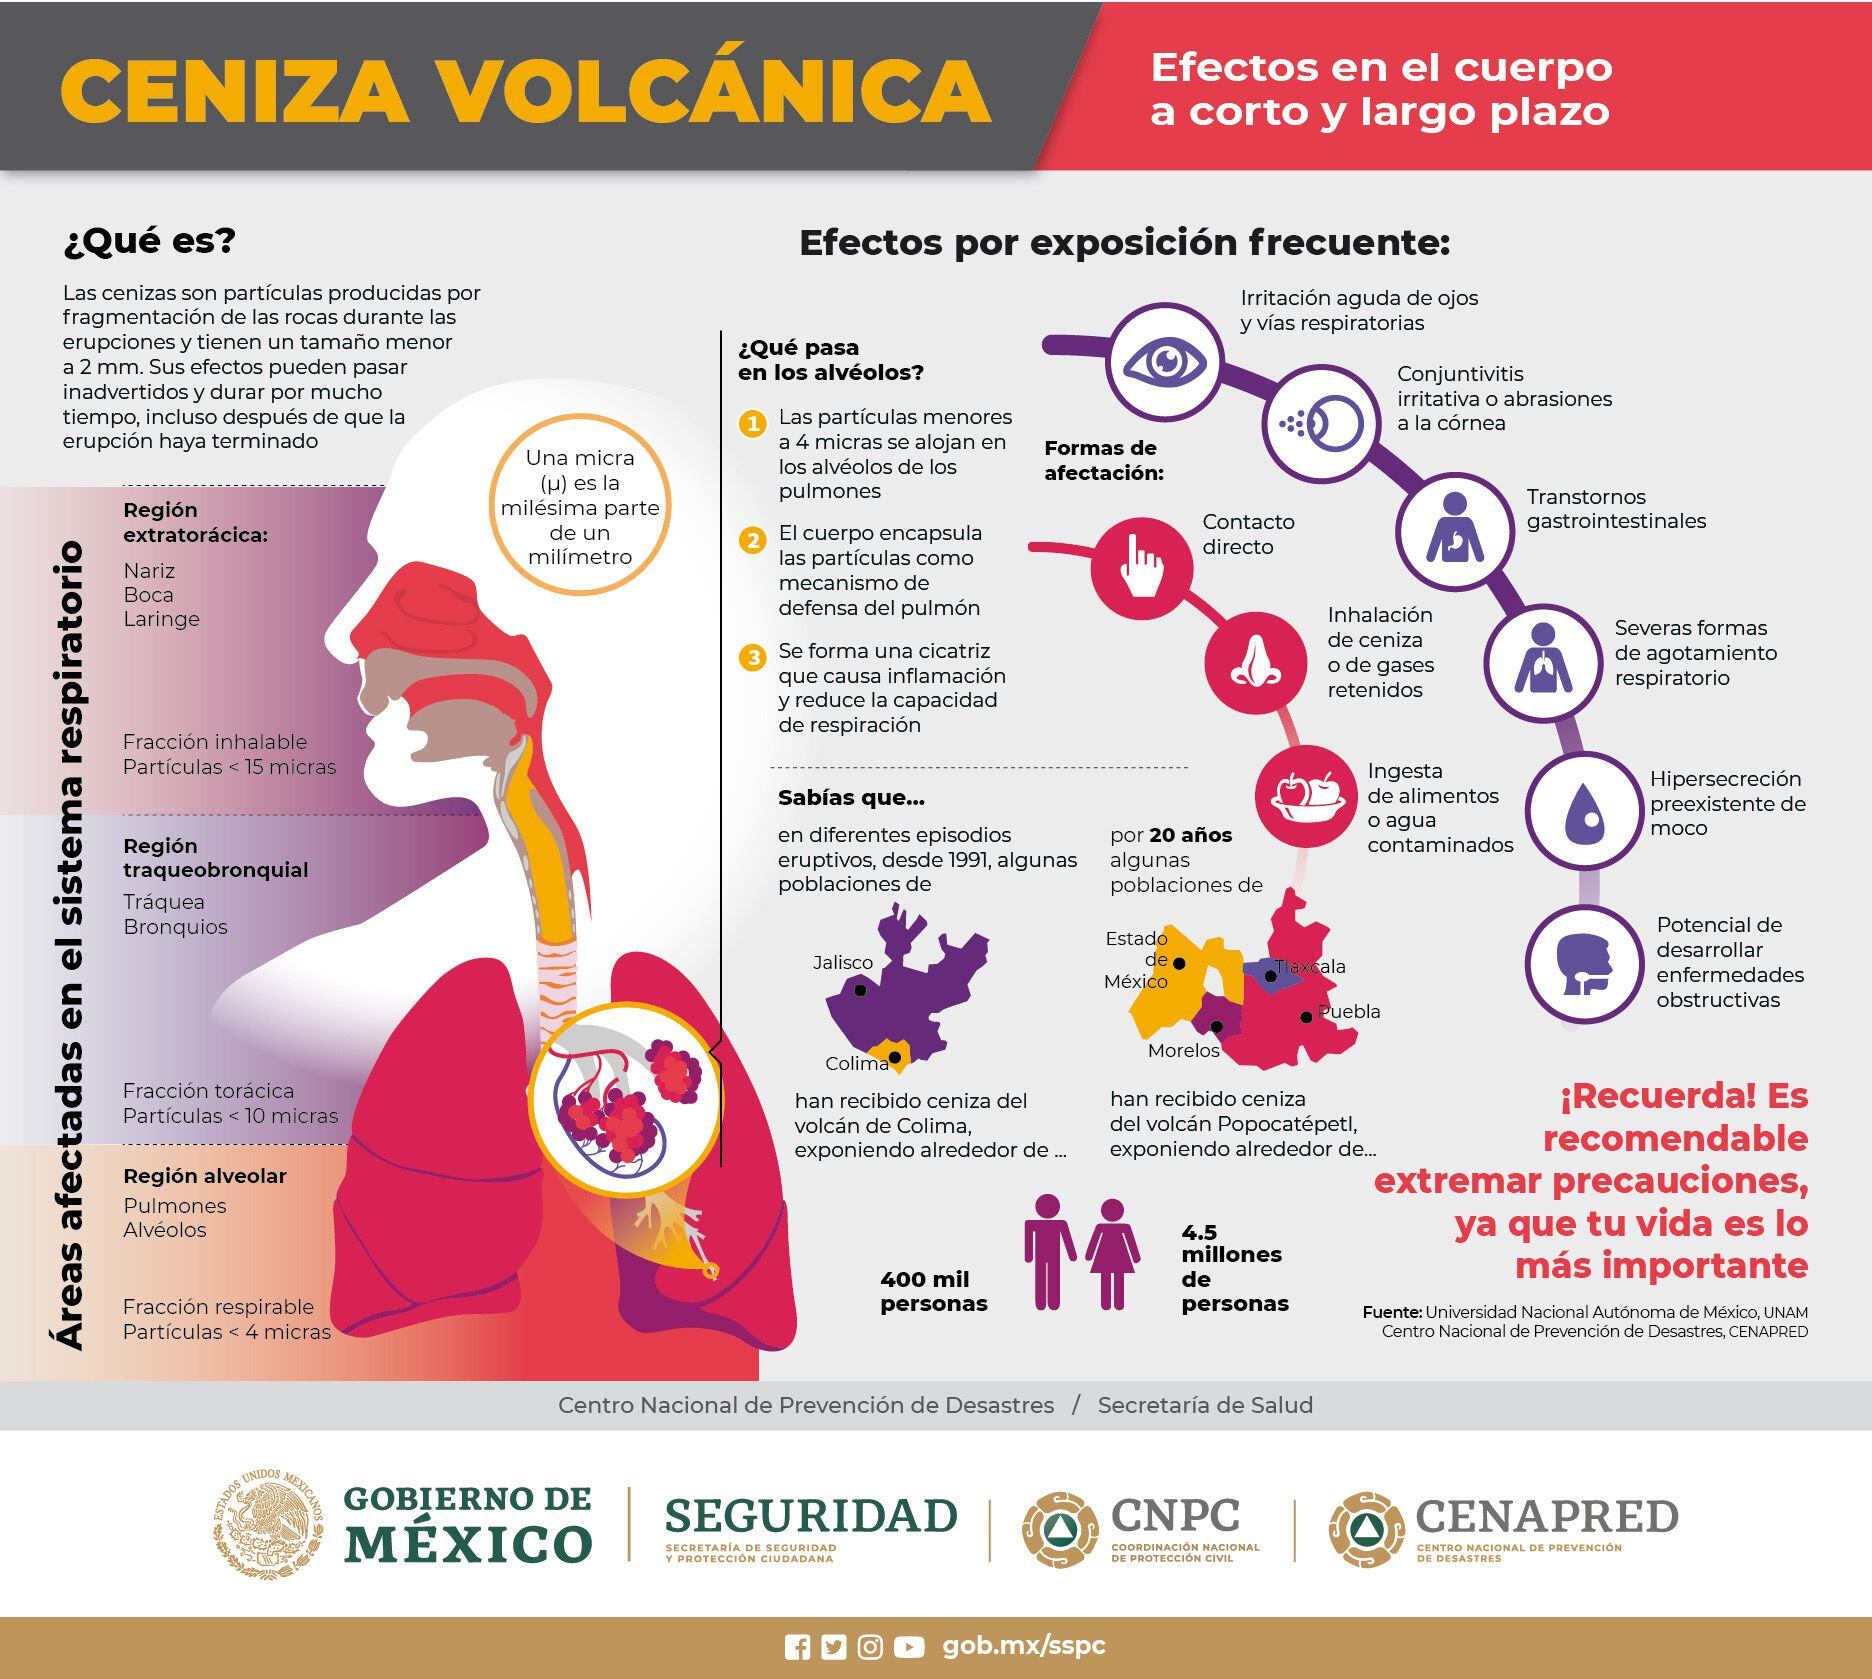 VIDEO: Volcán Popocatépetl tiene otra explosión con ceniza; alerta se mantiene en amarilla fase 2